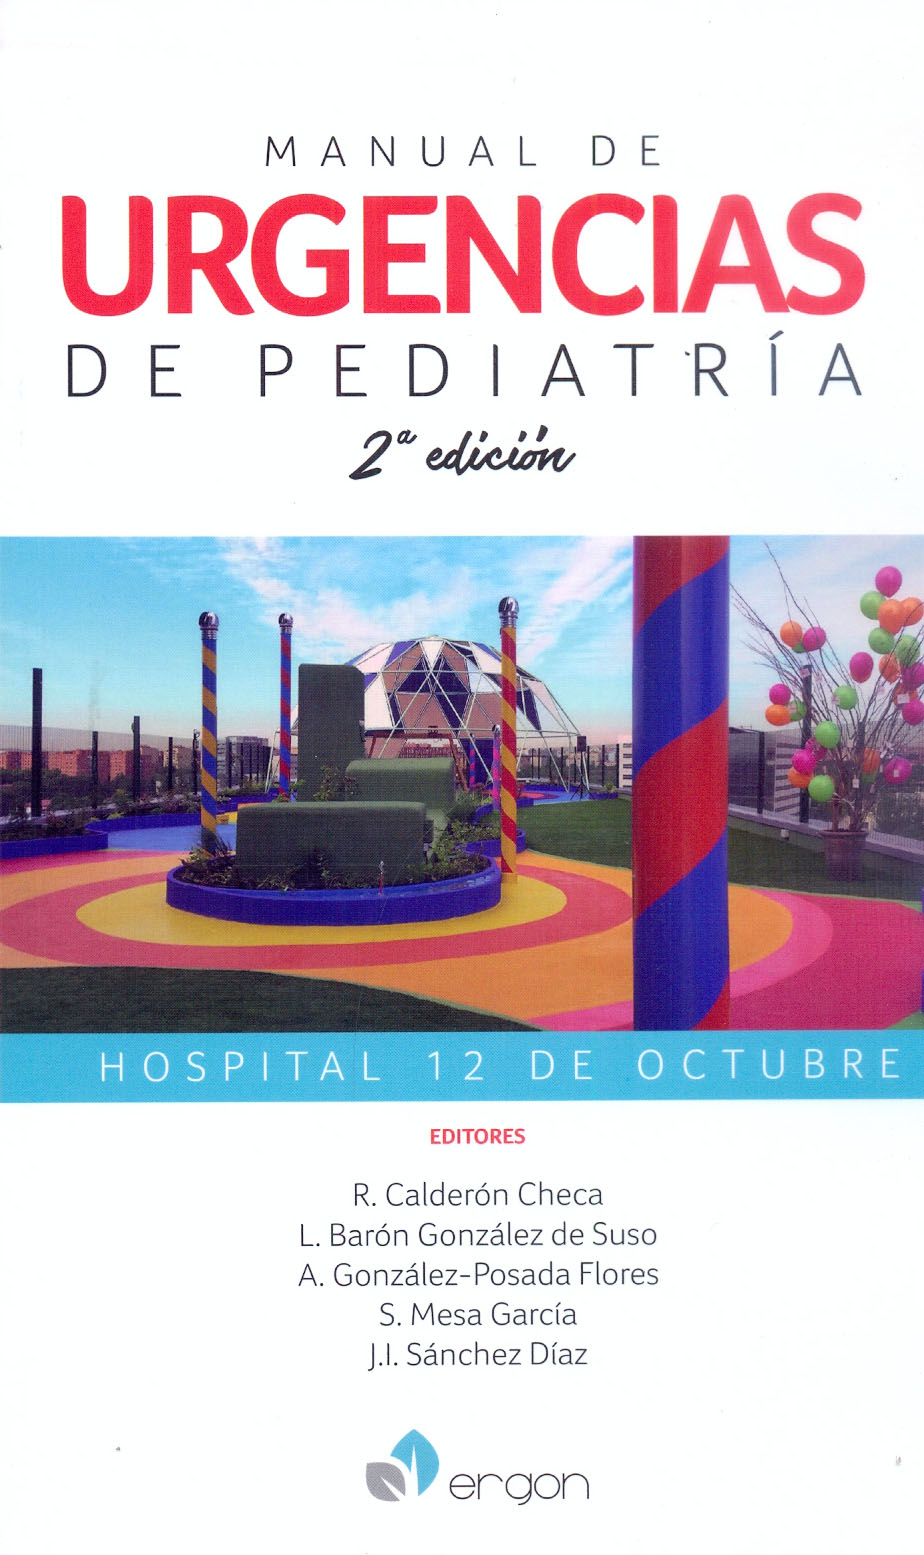 Manual de Urgencias Pediatría Hospital 12 de Octubre